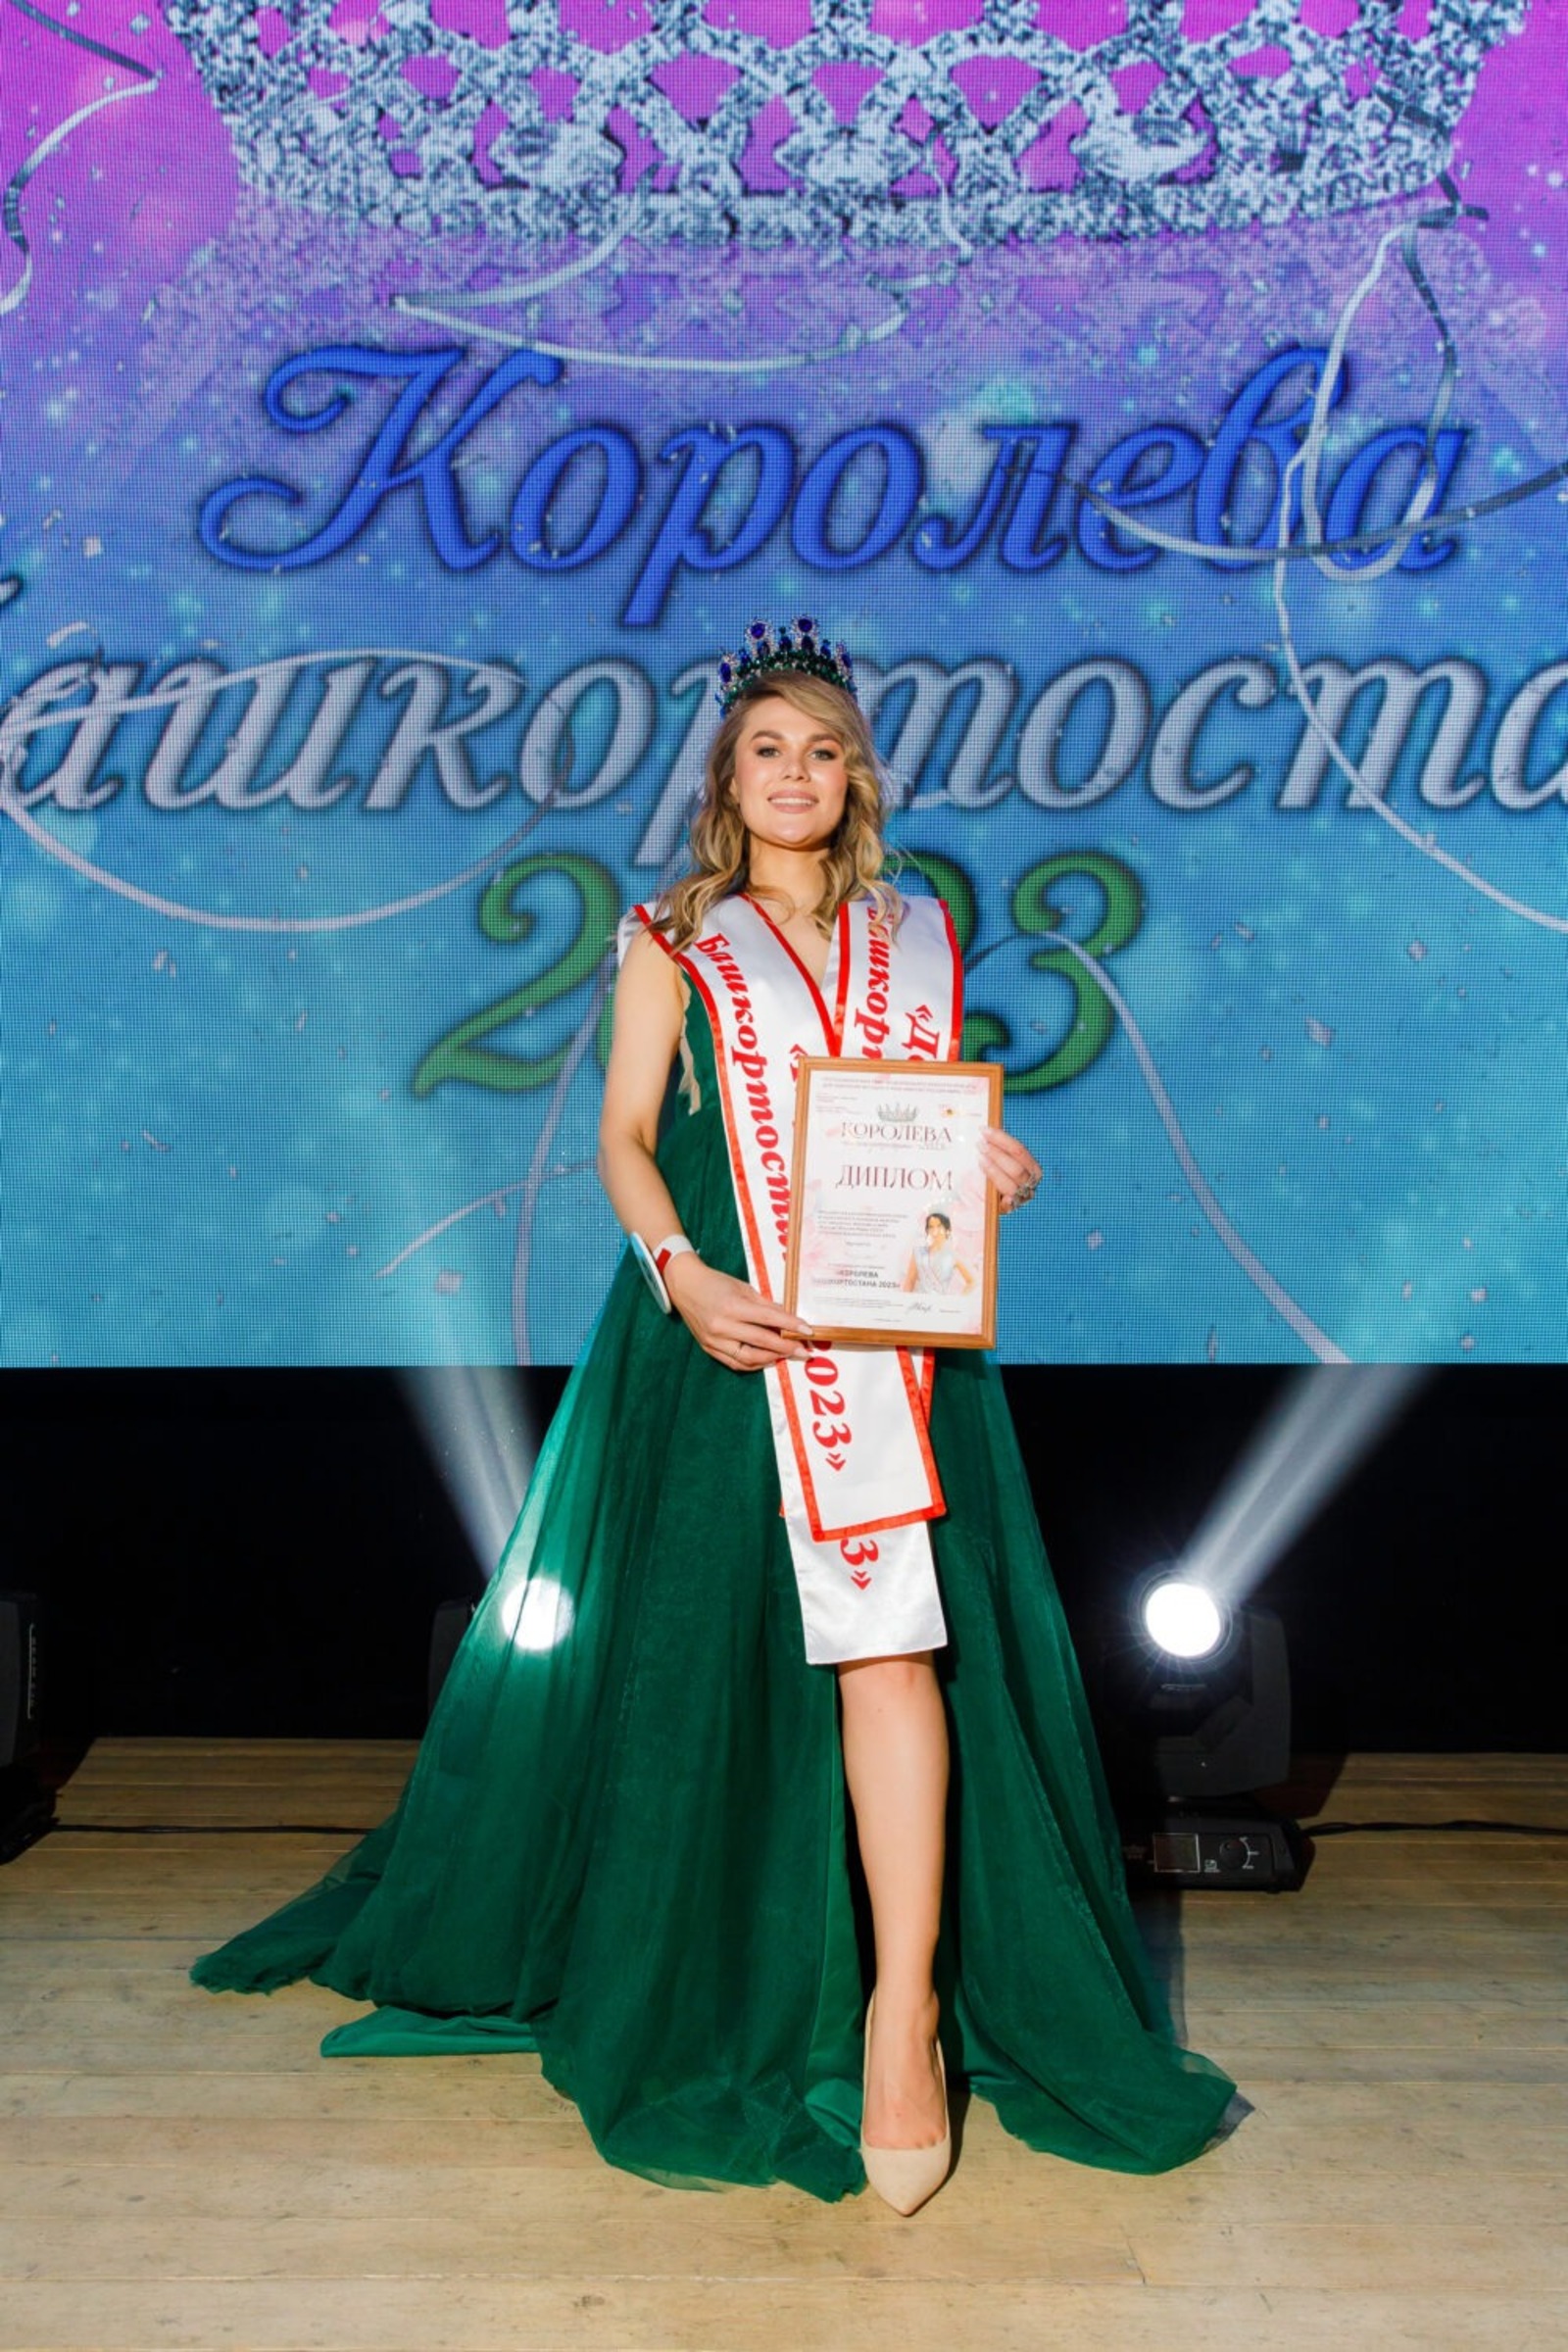 сообщество конкурса красоты "Королева Башкортостана"  ВКонтакте